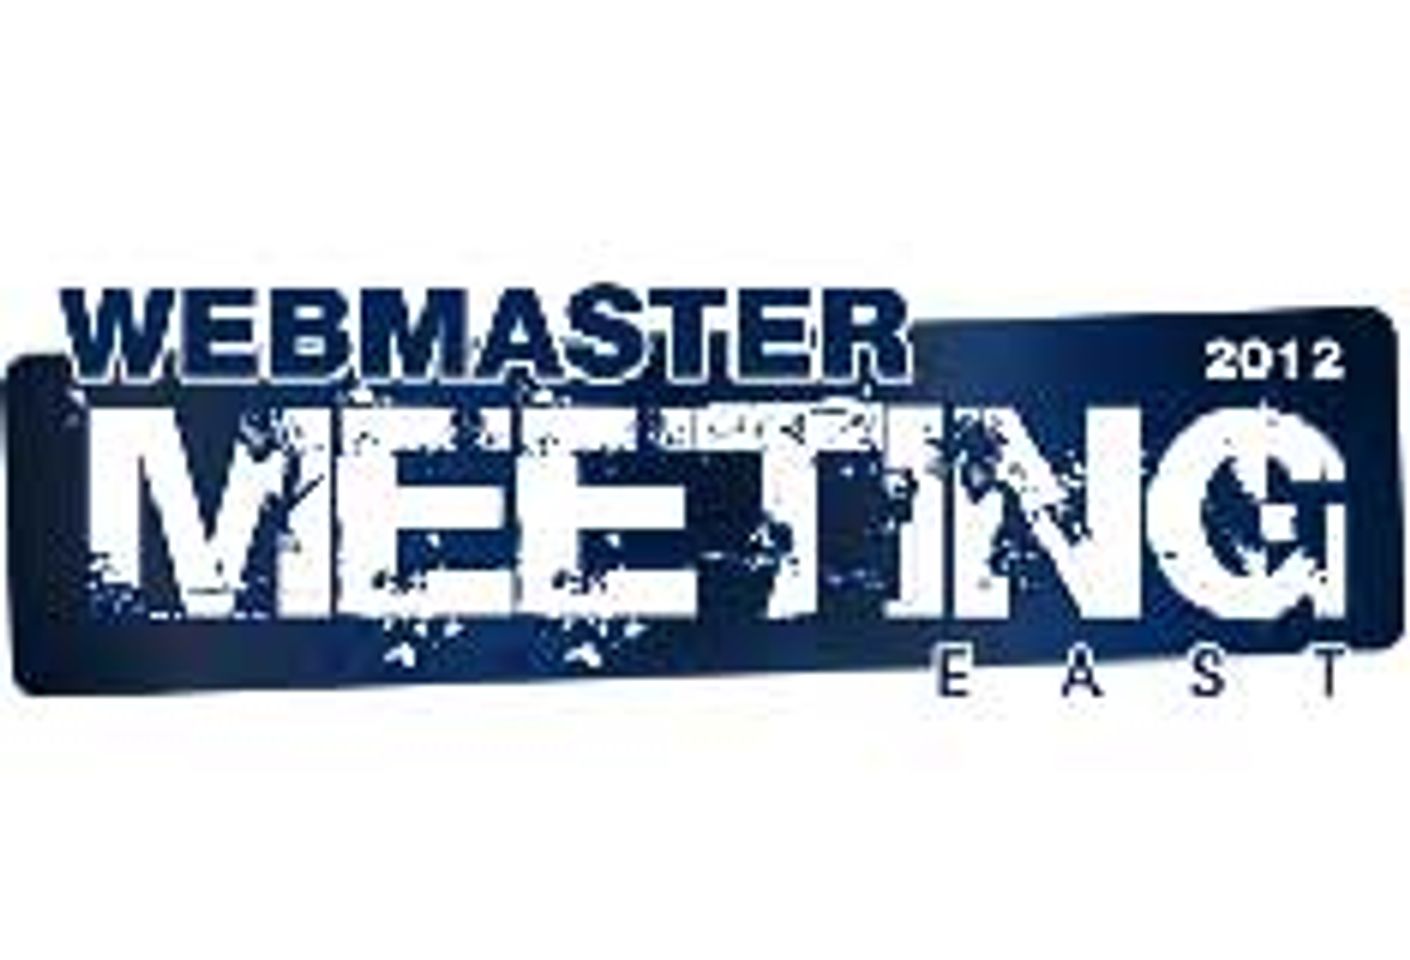 Webmaster Meeting East Set for Nov. 3 in Brno